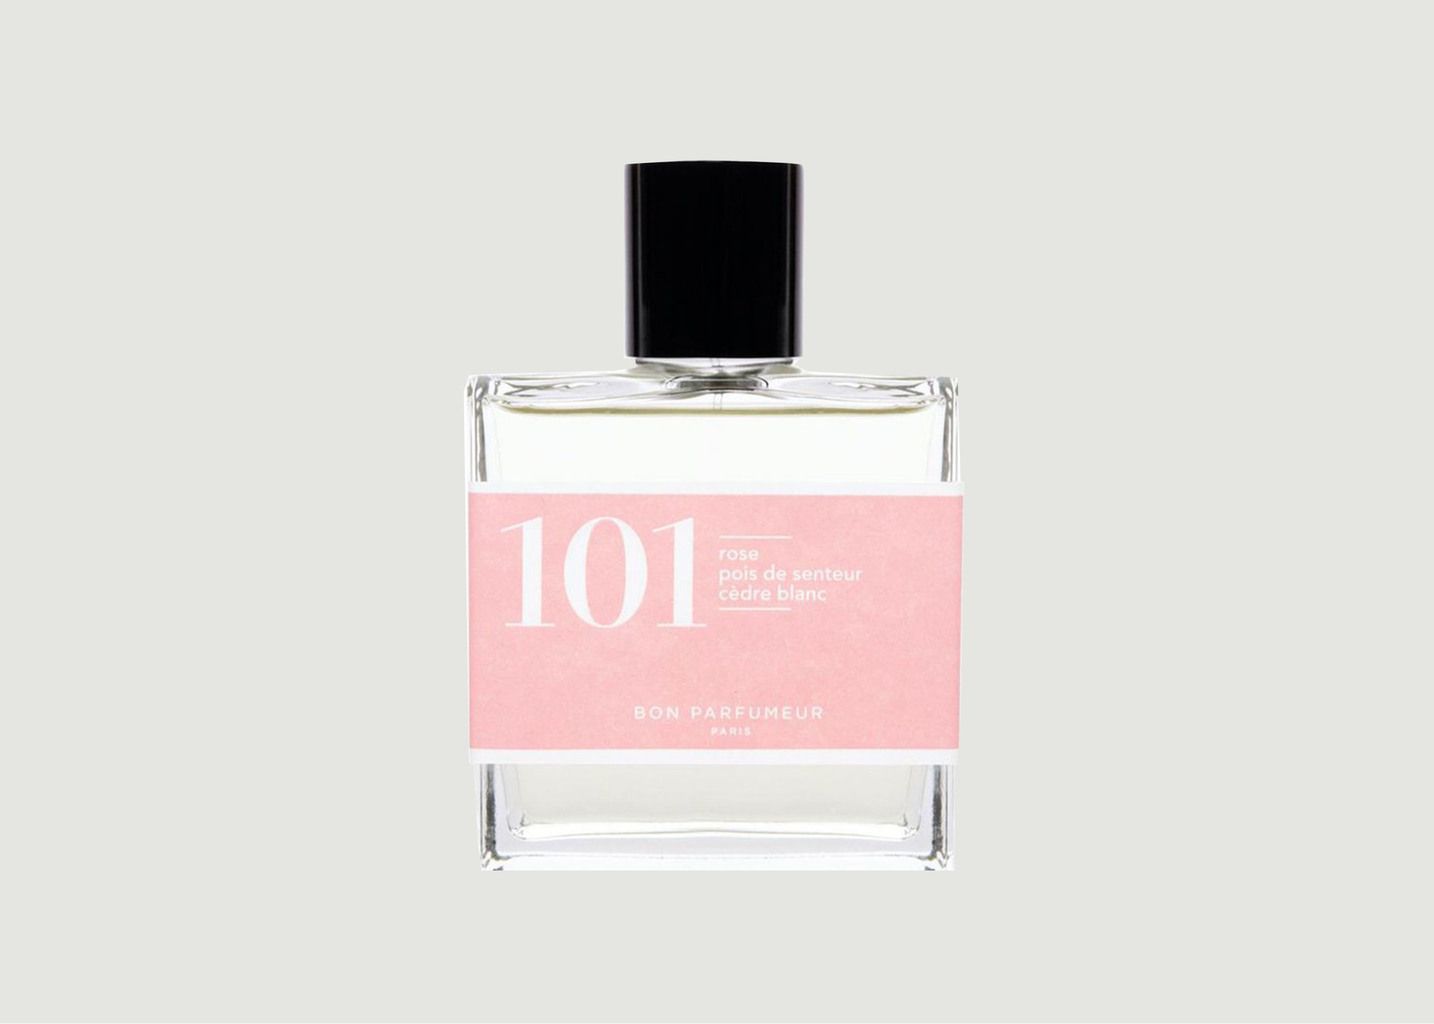 Eau de Parfum 101 : Rose, Pois de senteur, Cèdre blanc - Bon Parfumeur